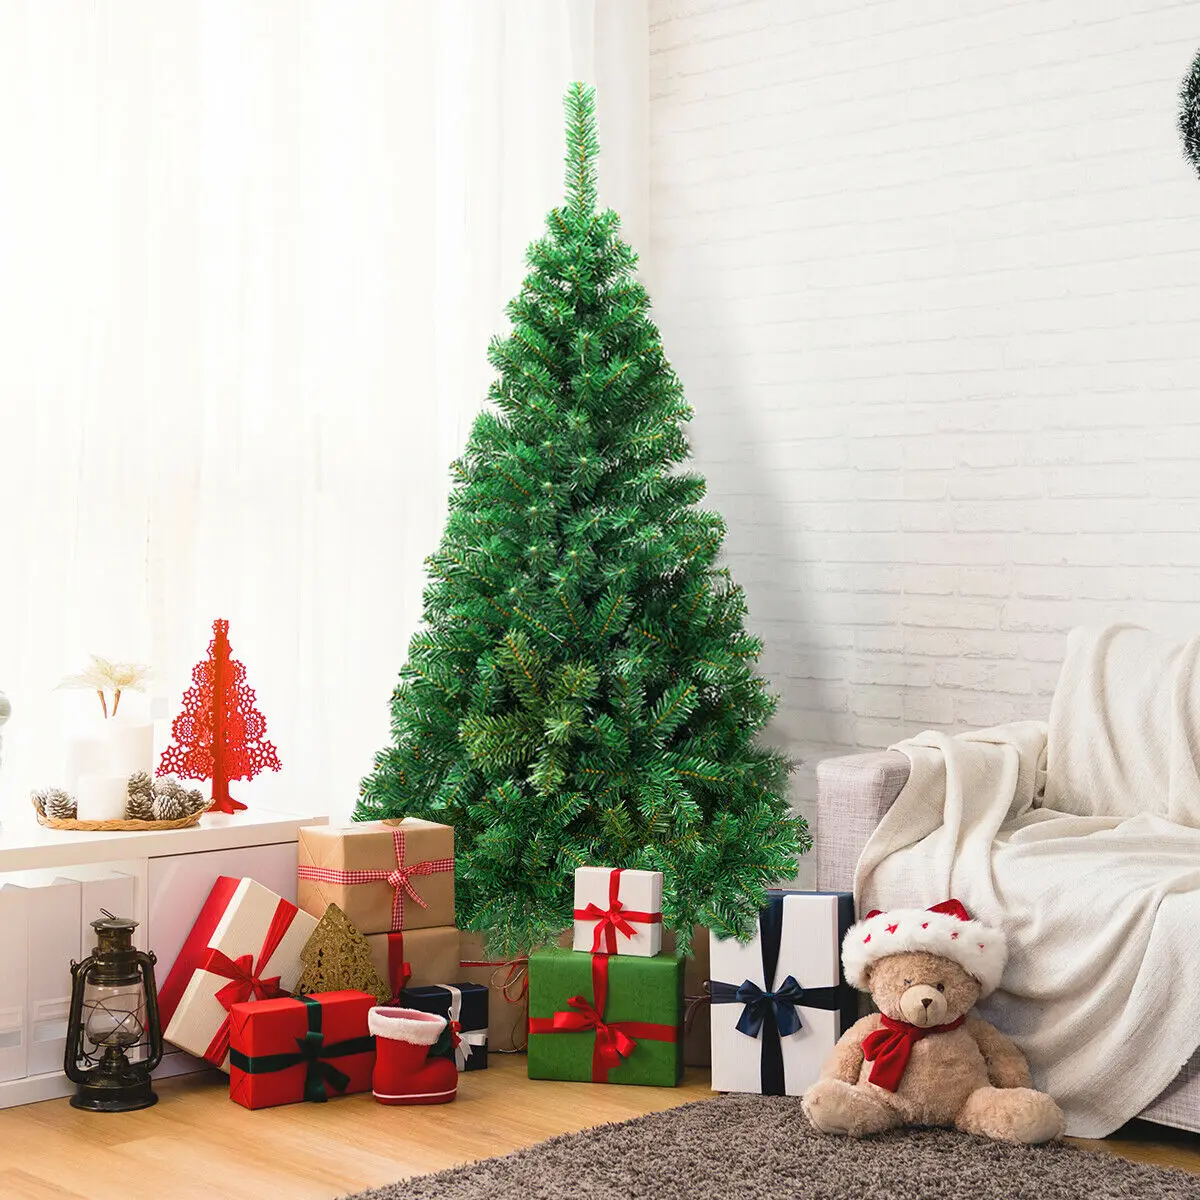 

Искусственная Рождественская елка из ПВХ, 7 футов, с подставкой, праздничный сезон, для помещений и улицы, зеленая, CM19723